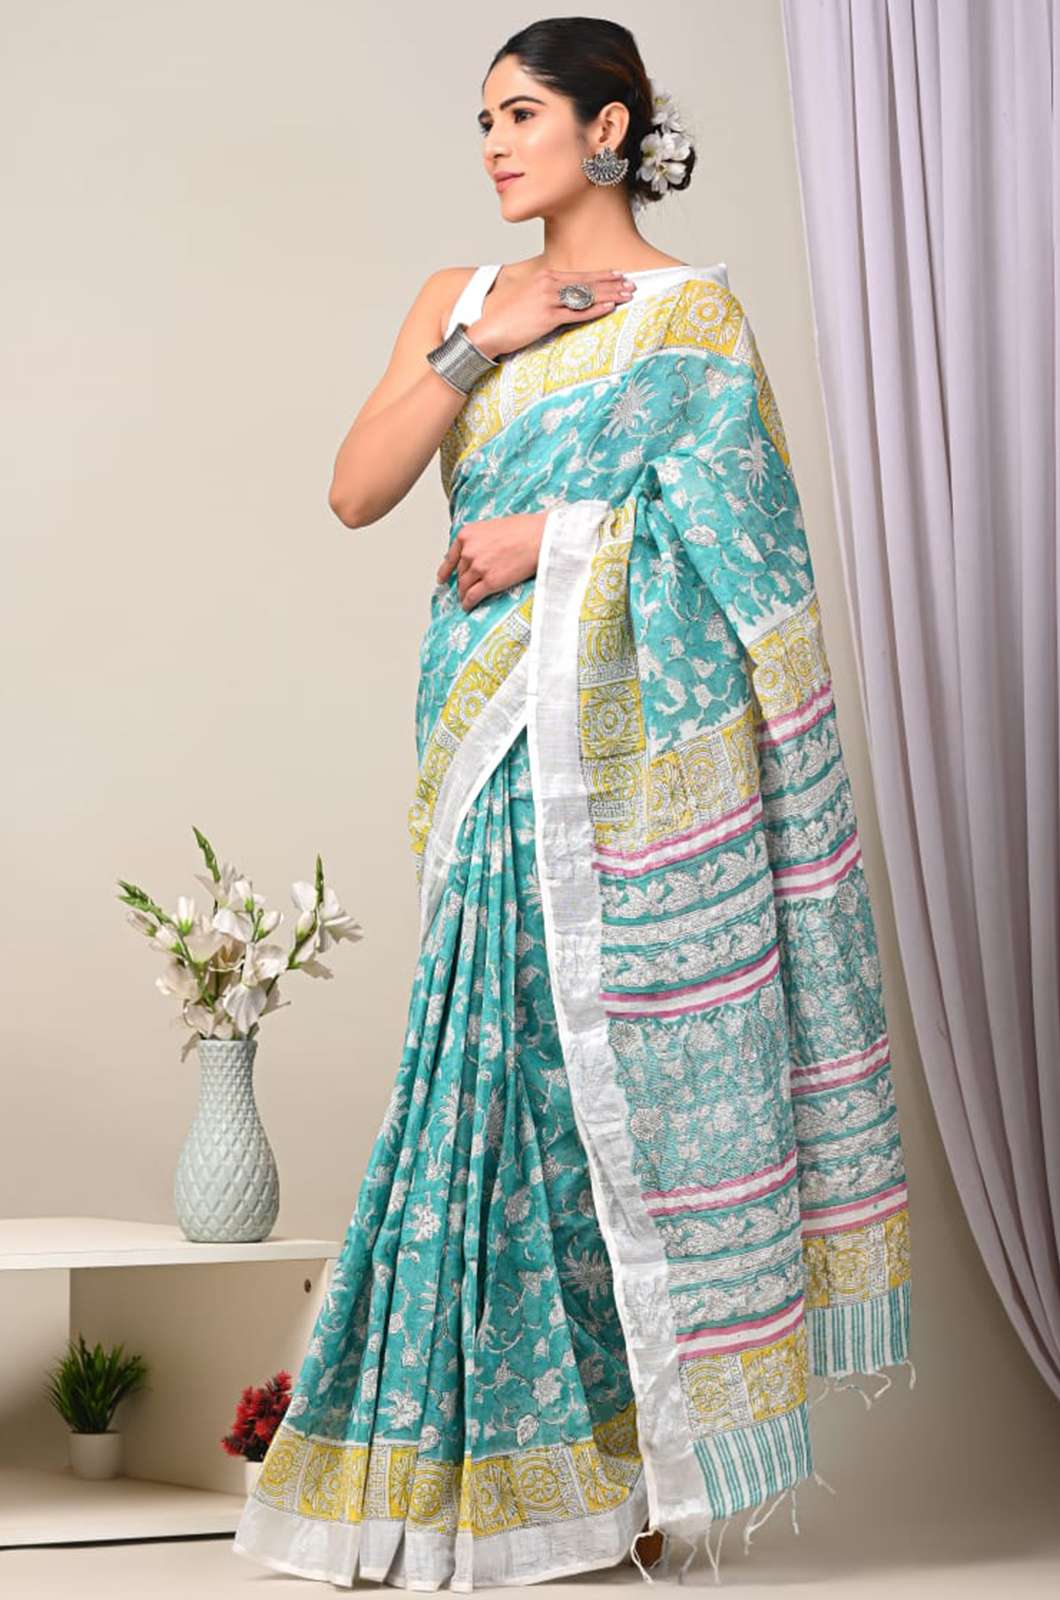 Shri Balaji Emporium 5820A Beautiful Hand Block Printed Linen Saree with Blouse